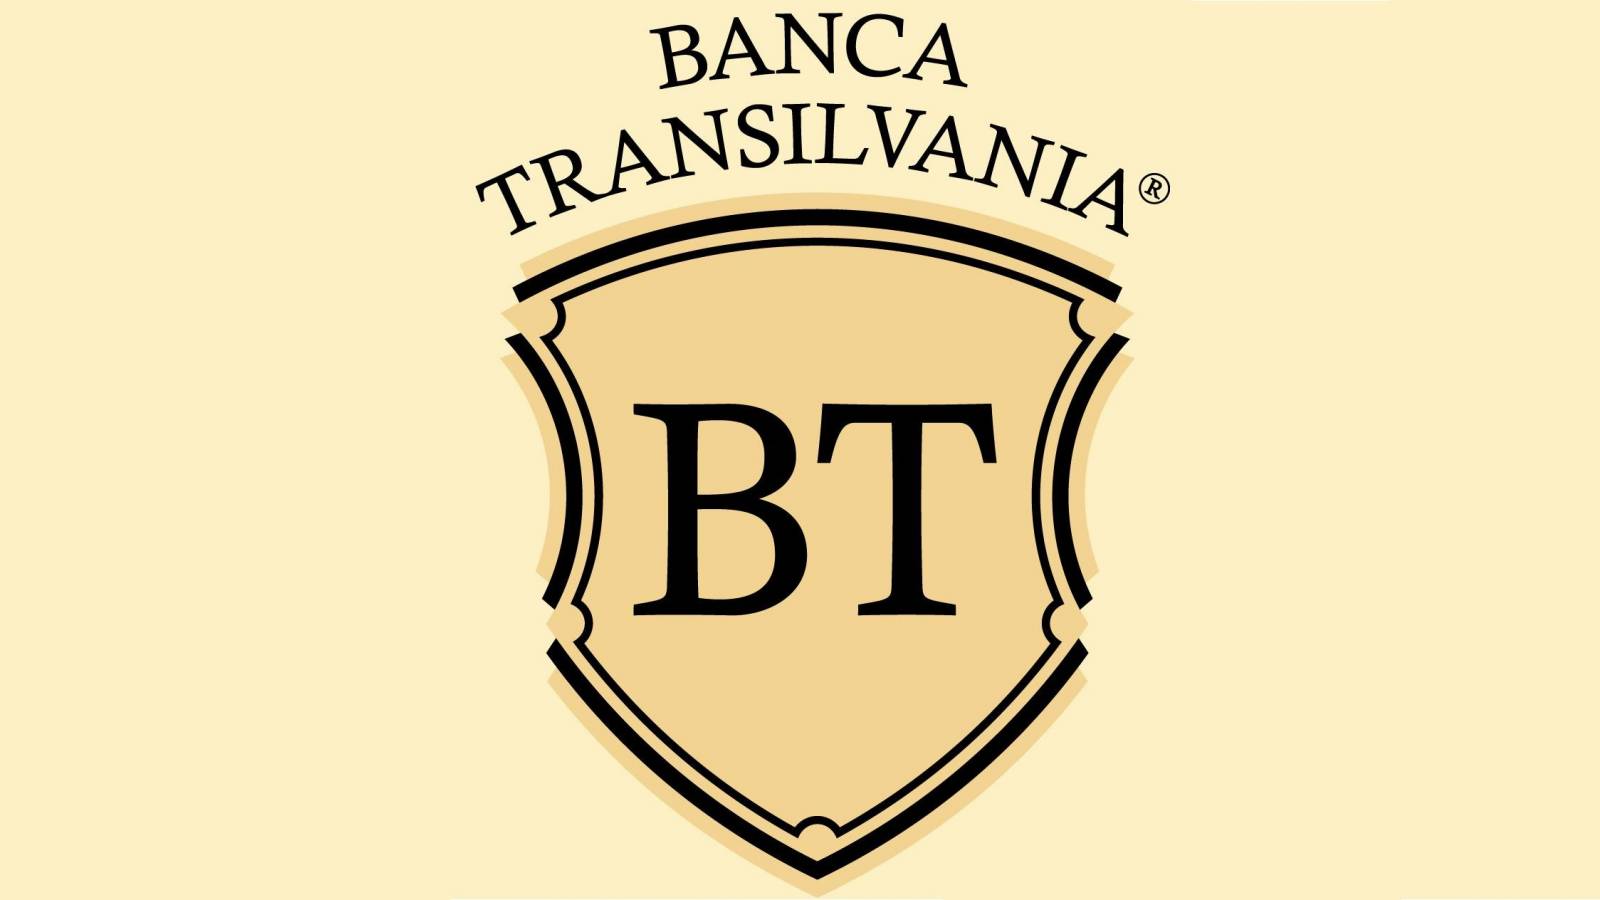 BANCA Transilvania 3 OFICJALNE OSTRZEŻENIA LAST MINUTE Uwaga wszyscy rumuńscy klienci